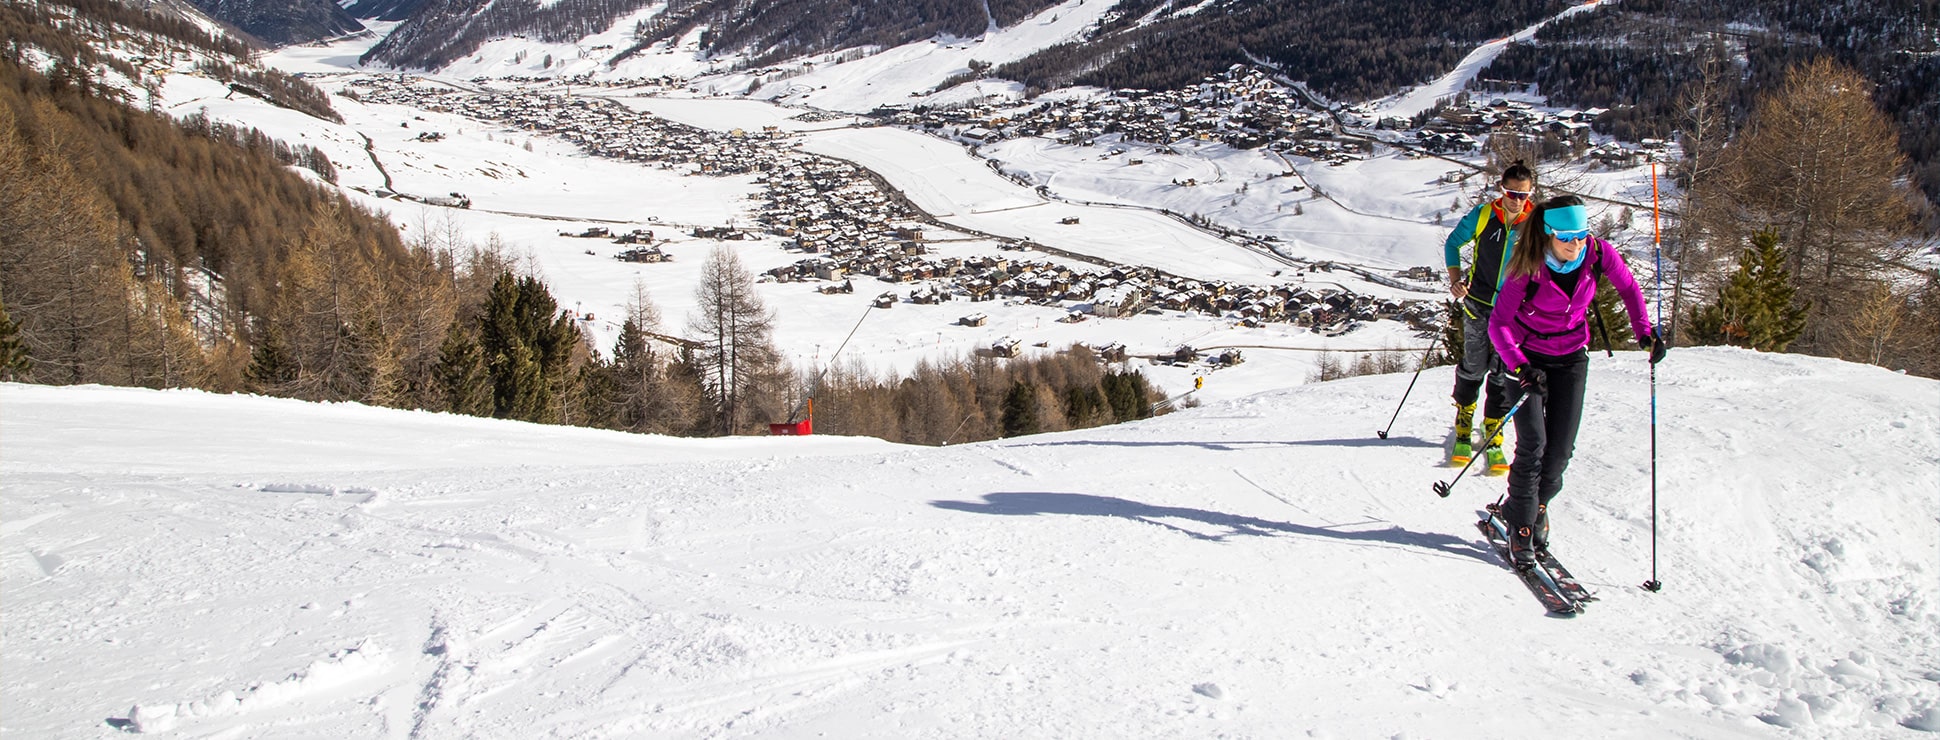 Ski-Alp Track in Livigno